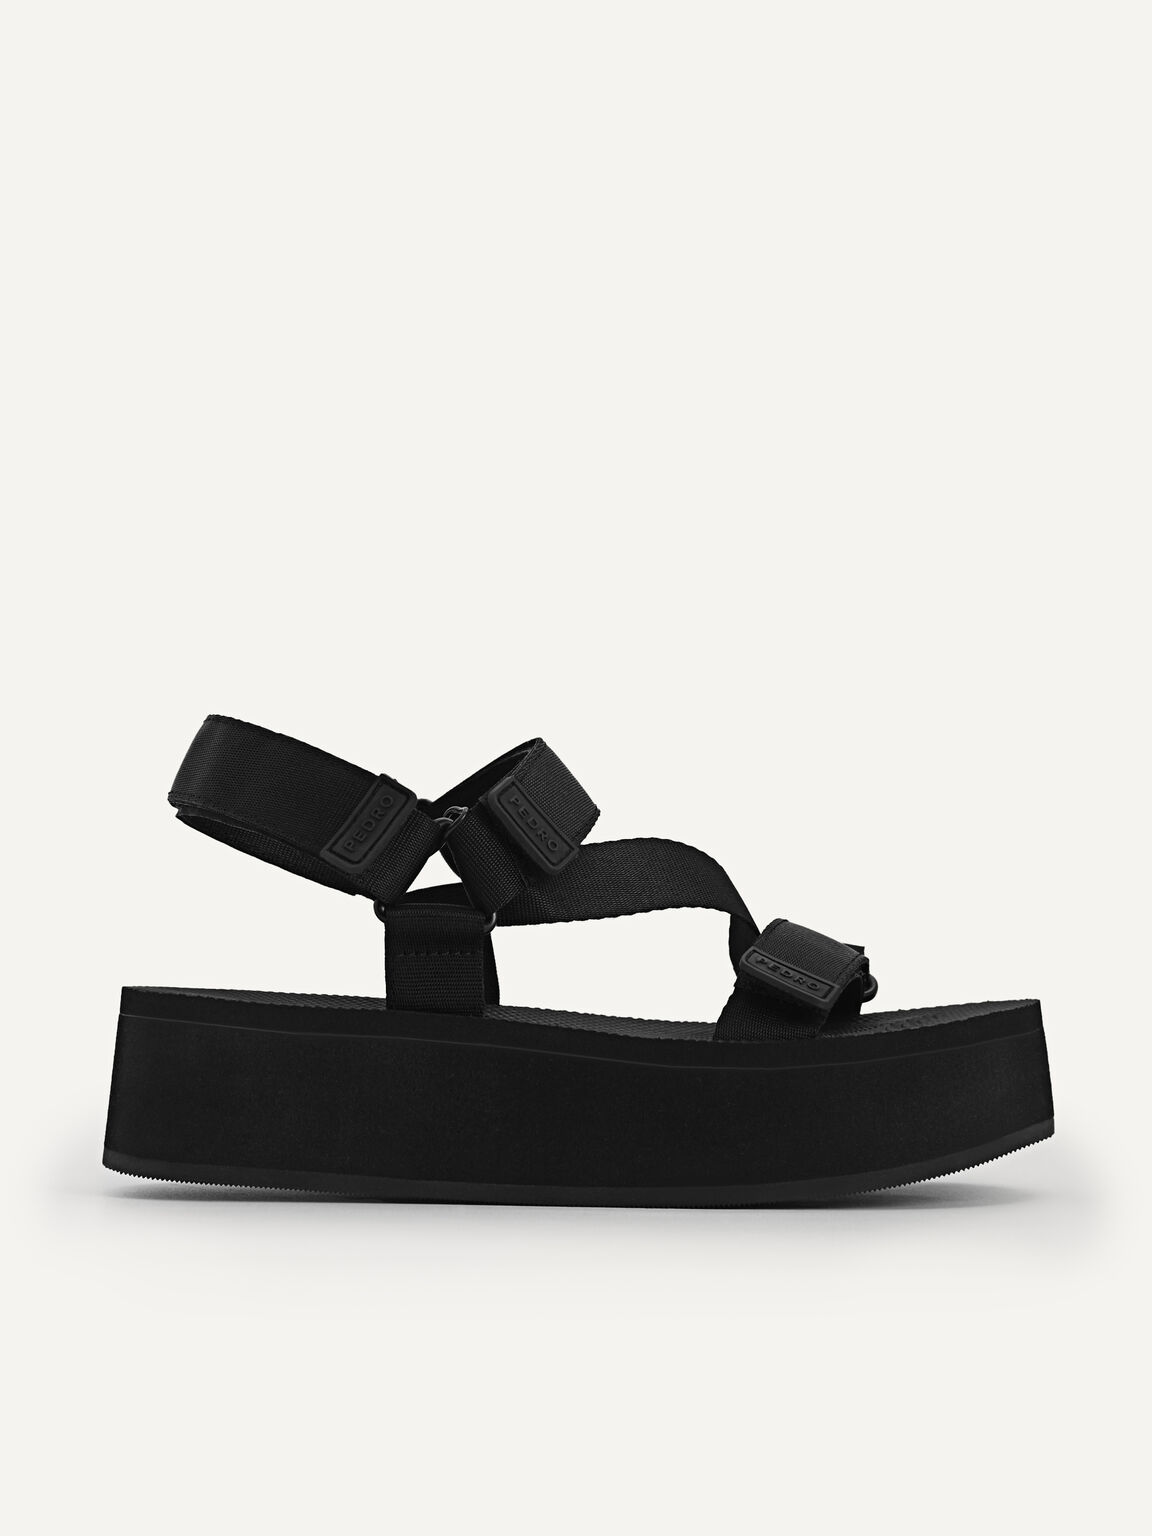 Flatform Sandals, Black